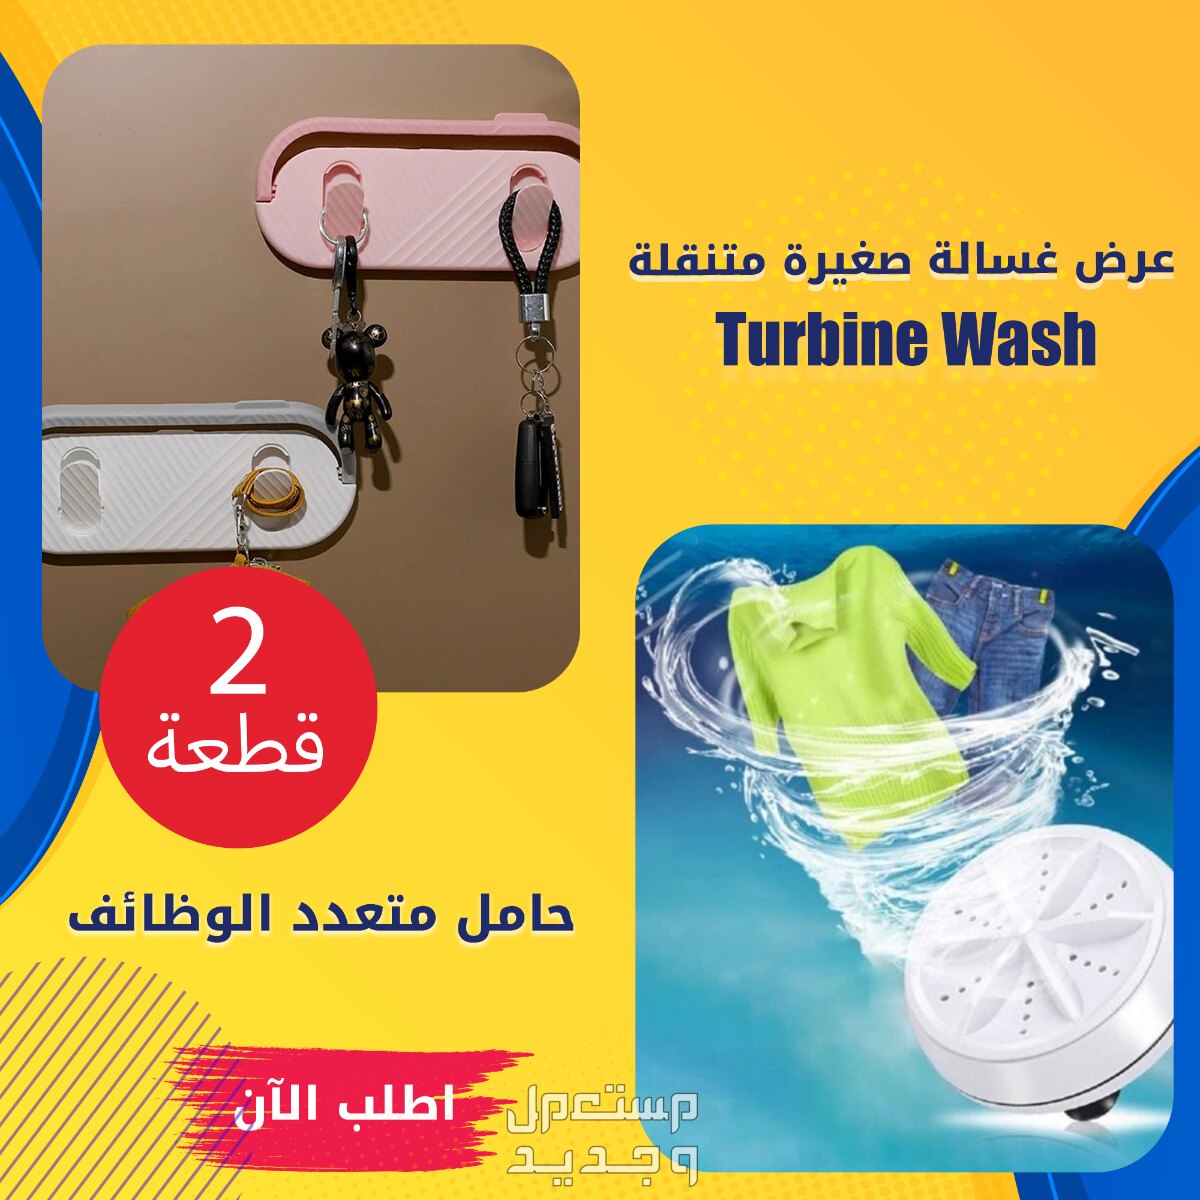 عرض غسالة صغيرة متنقلة Turbine Wash+قطعتين حامل متعدد الوظائف في الهرم بسعر 320 جنيه مصري